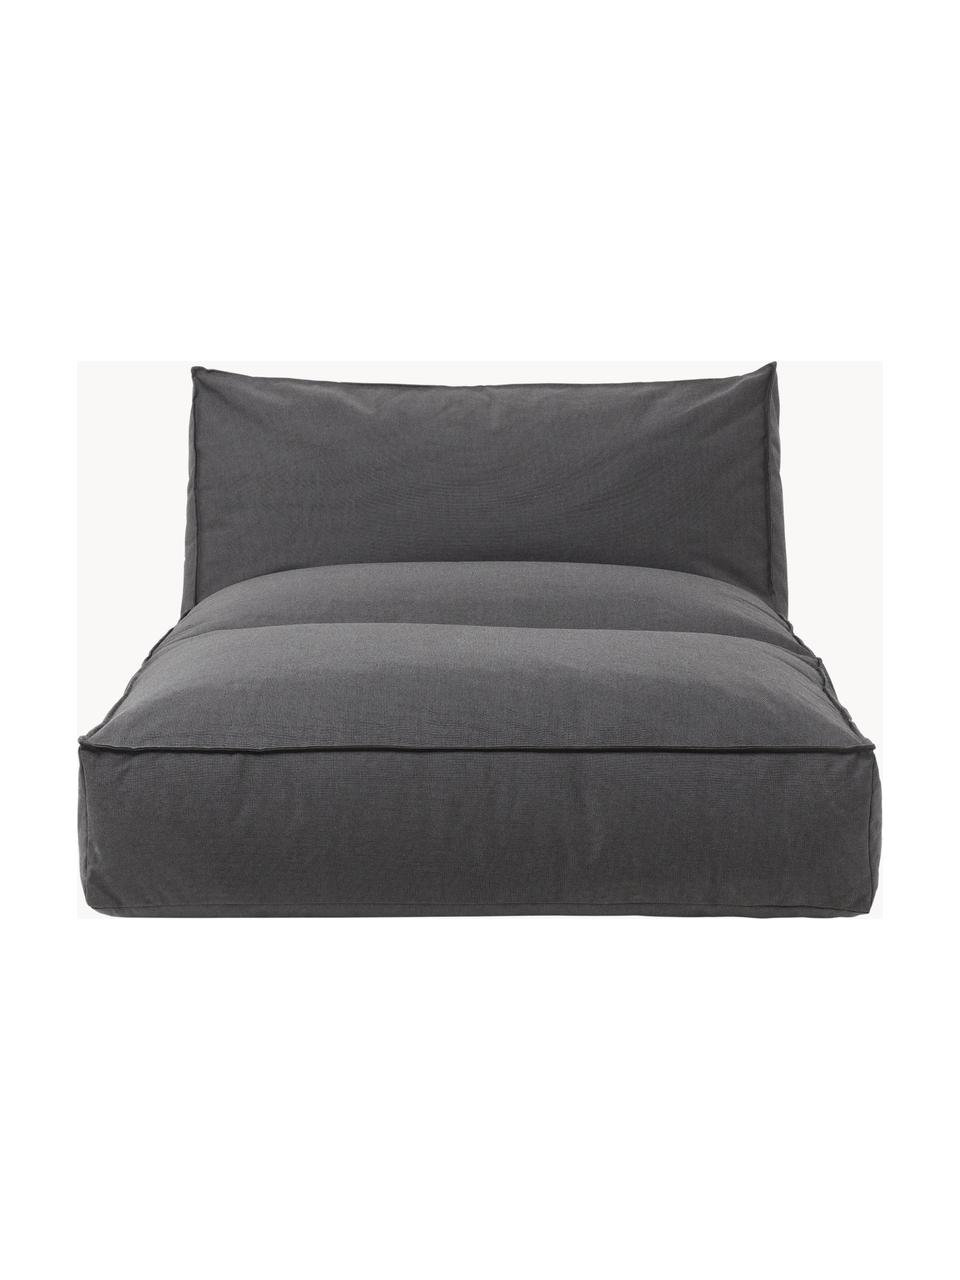 Zewnętrzne łóżko dzienne Stay, Tapicerka: 100% poliester odporny na, Antracytowa tkanina, S 116 x G 190 cm